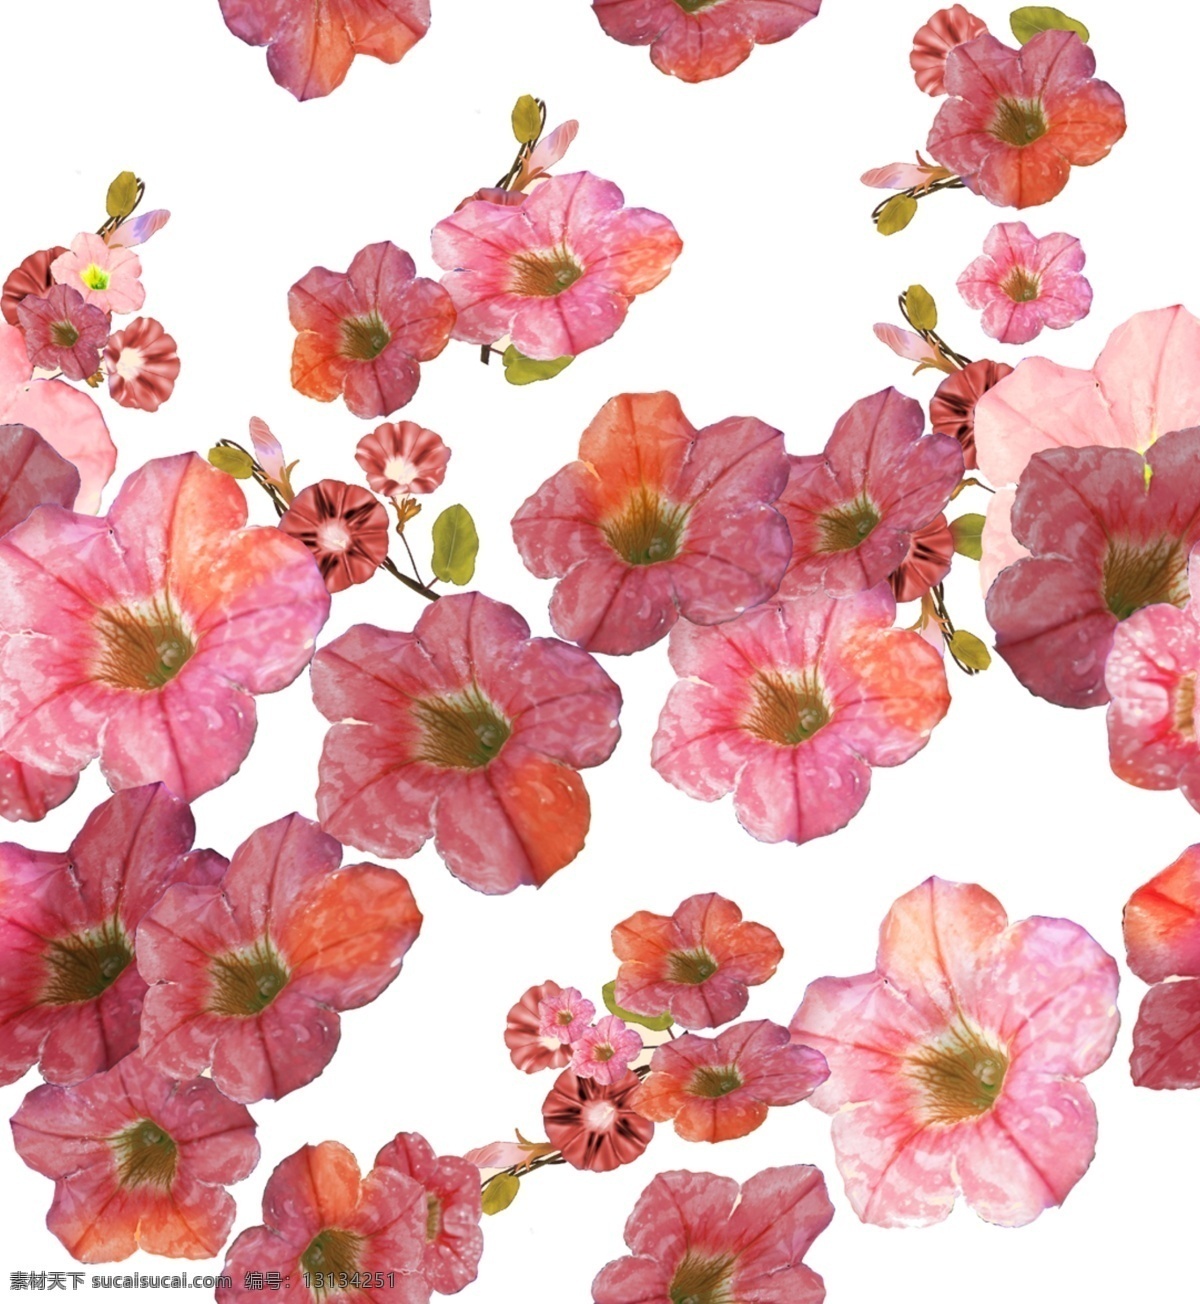 红花免费下载 红花 花朵 喇叭花 矢量图 花纹花边